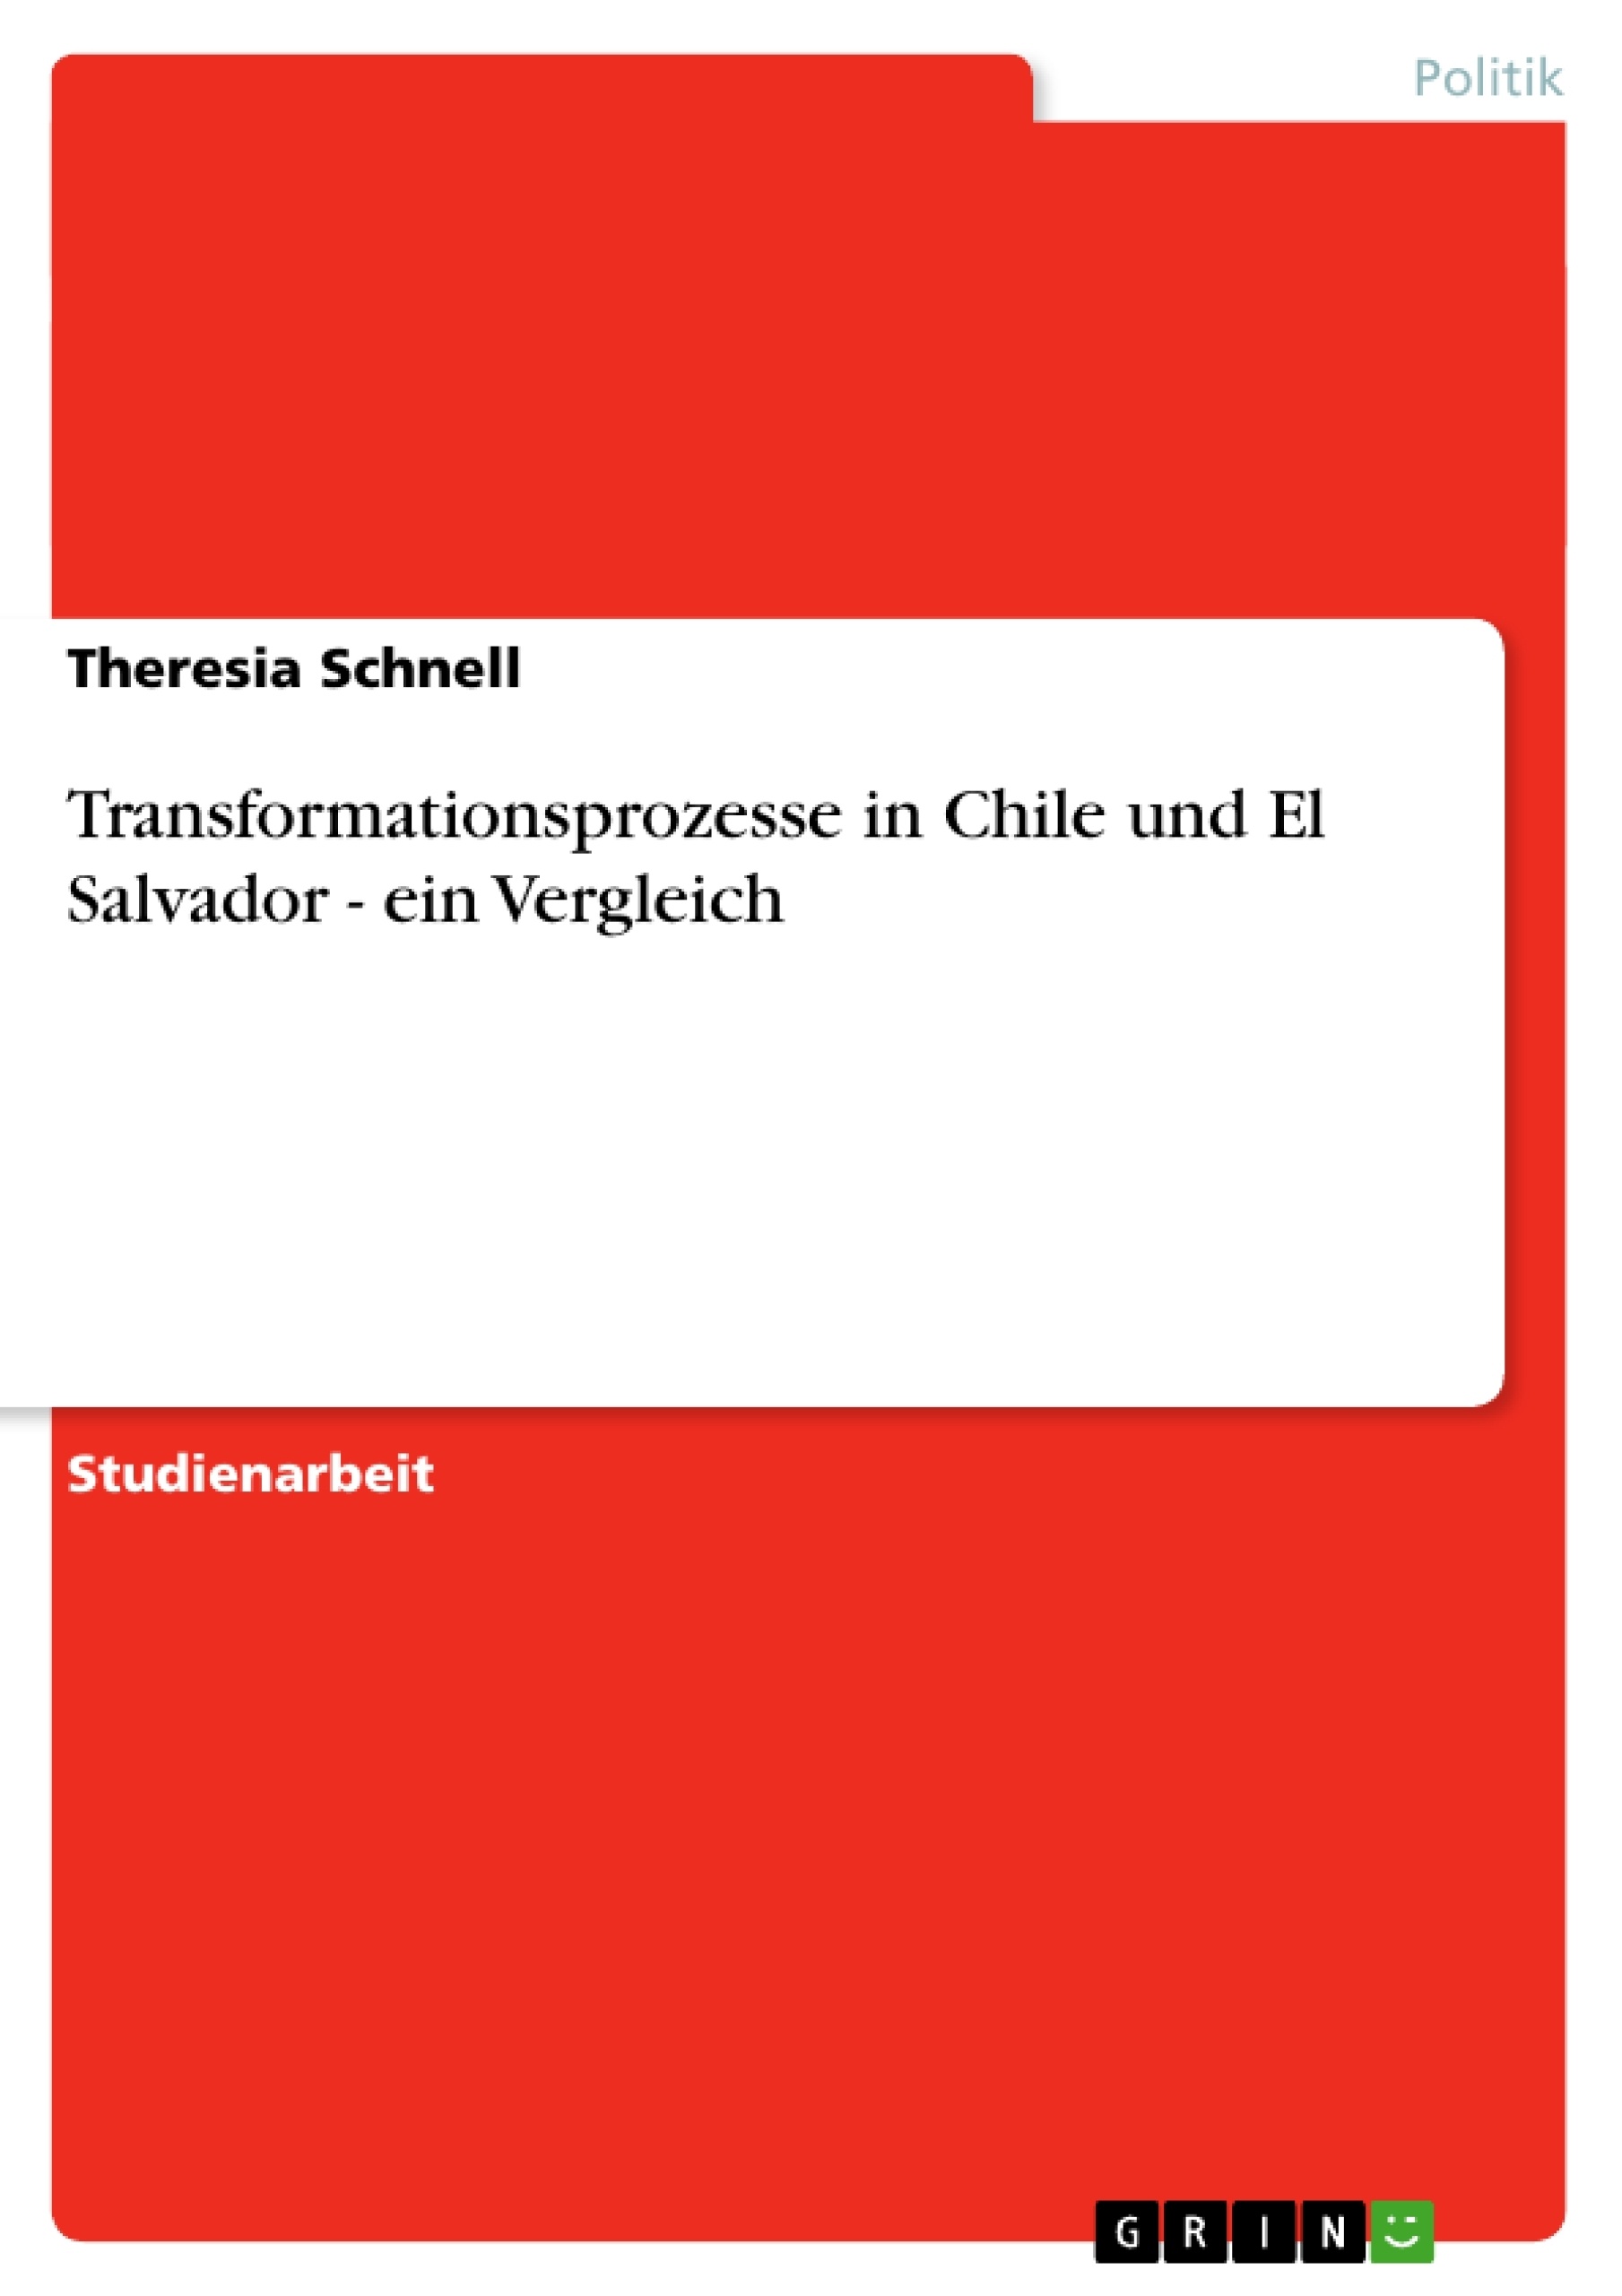 Título: Transformationsprozesse in Chile und El Salvador - ein Vergleich